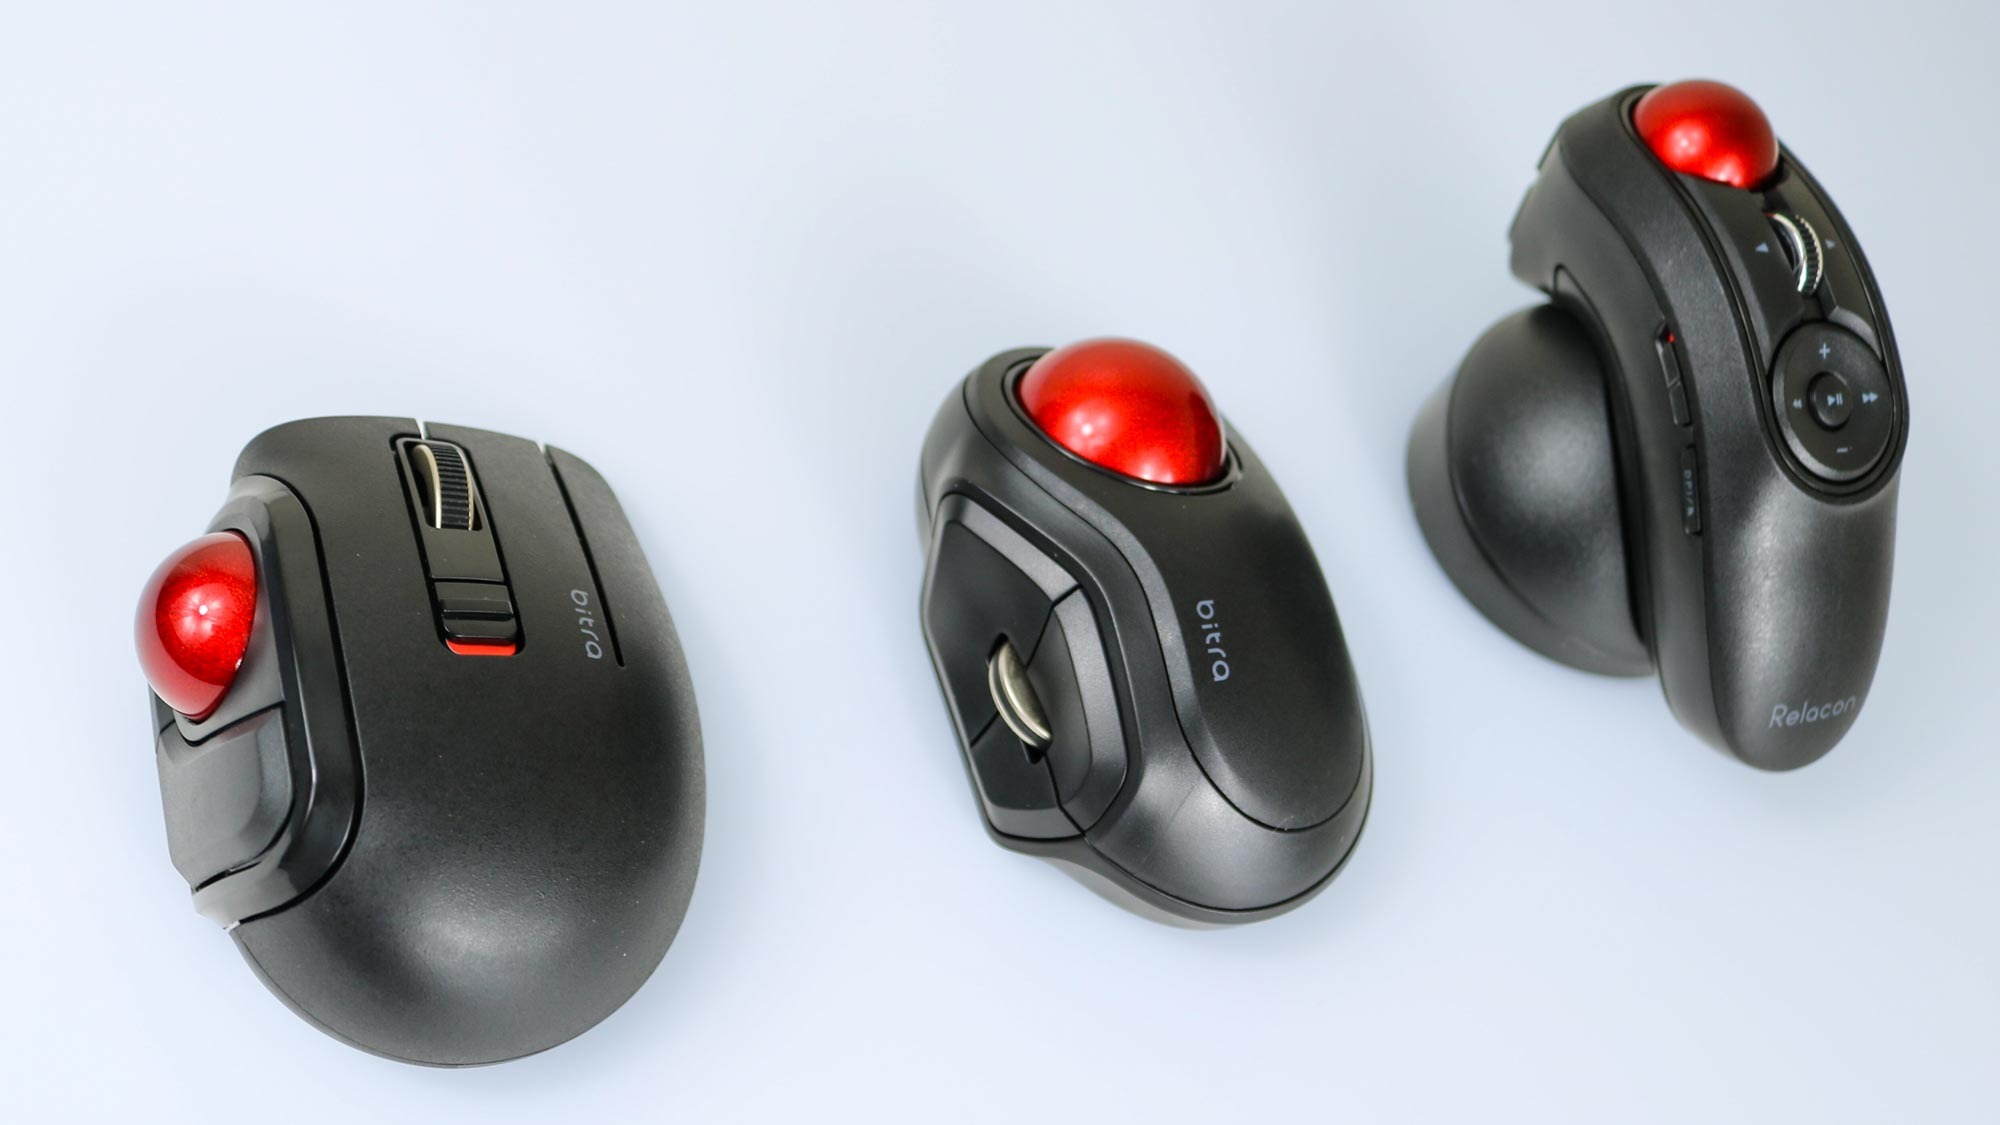 Elecom'un üç seyahat topunu fare modelini gösteren resim